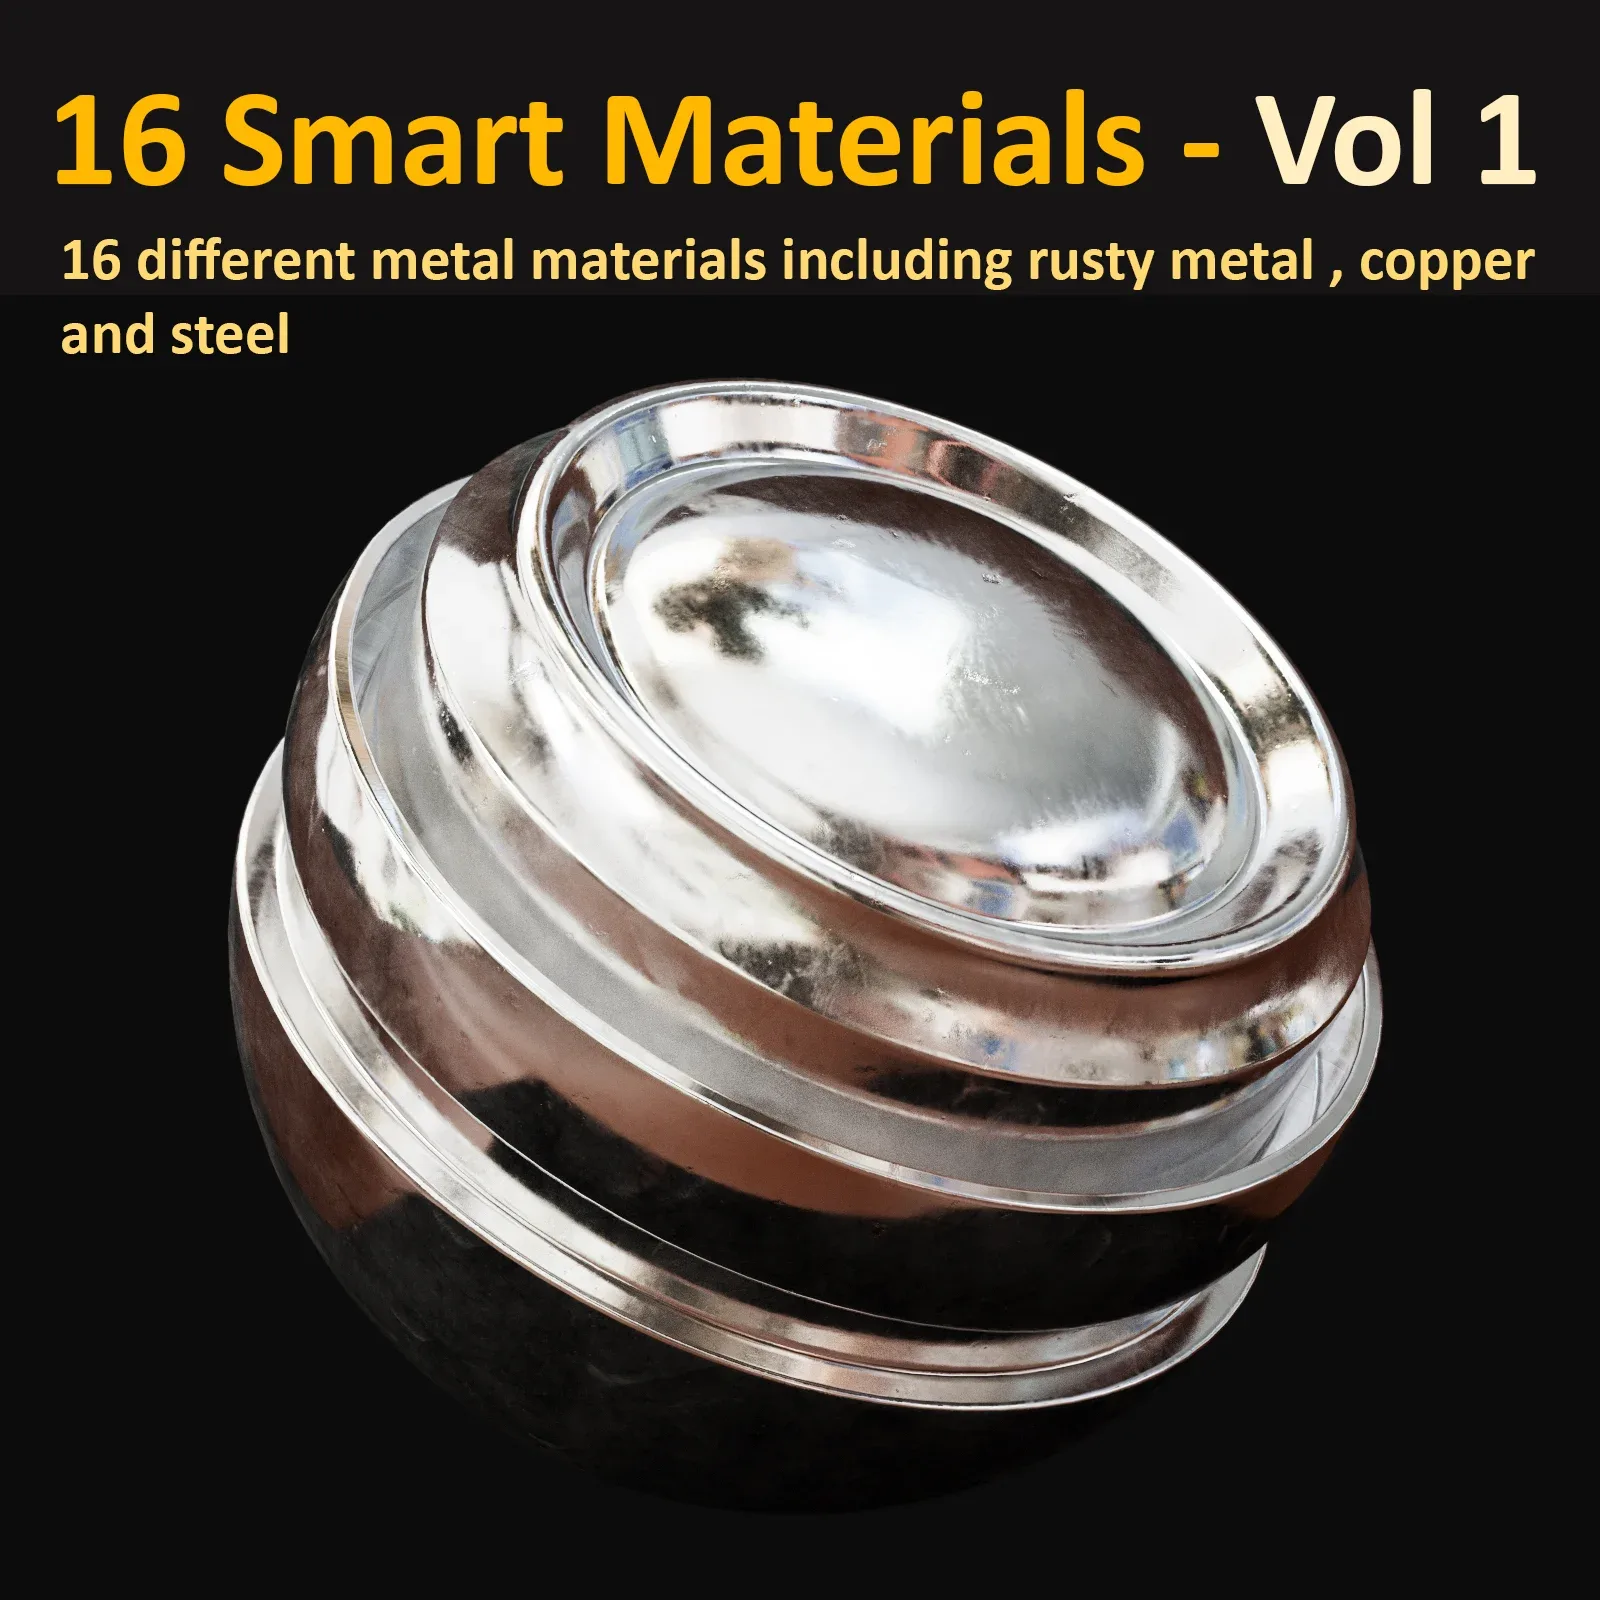 16 Smart Materials - Vol. 1